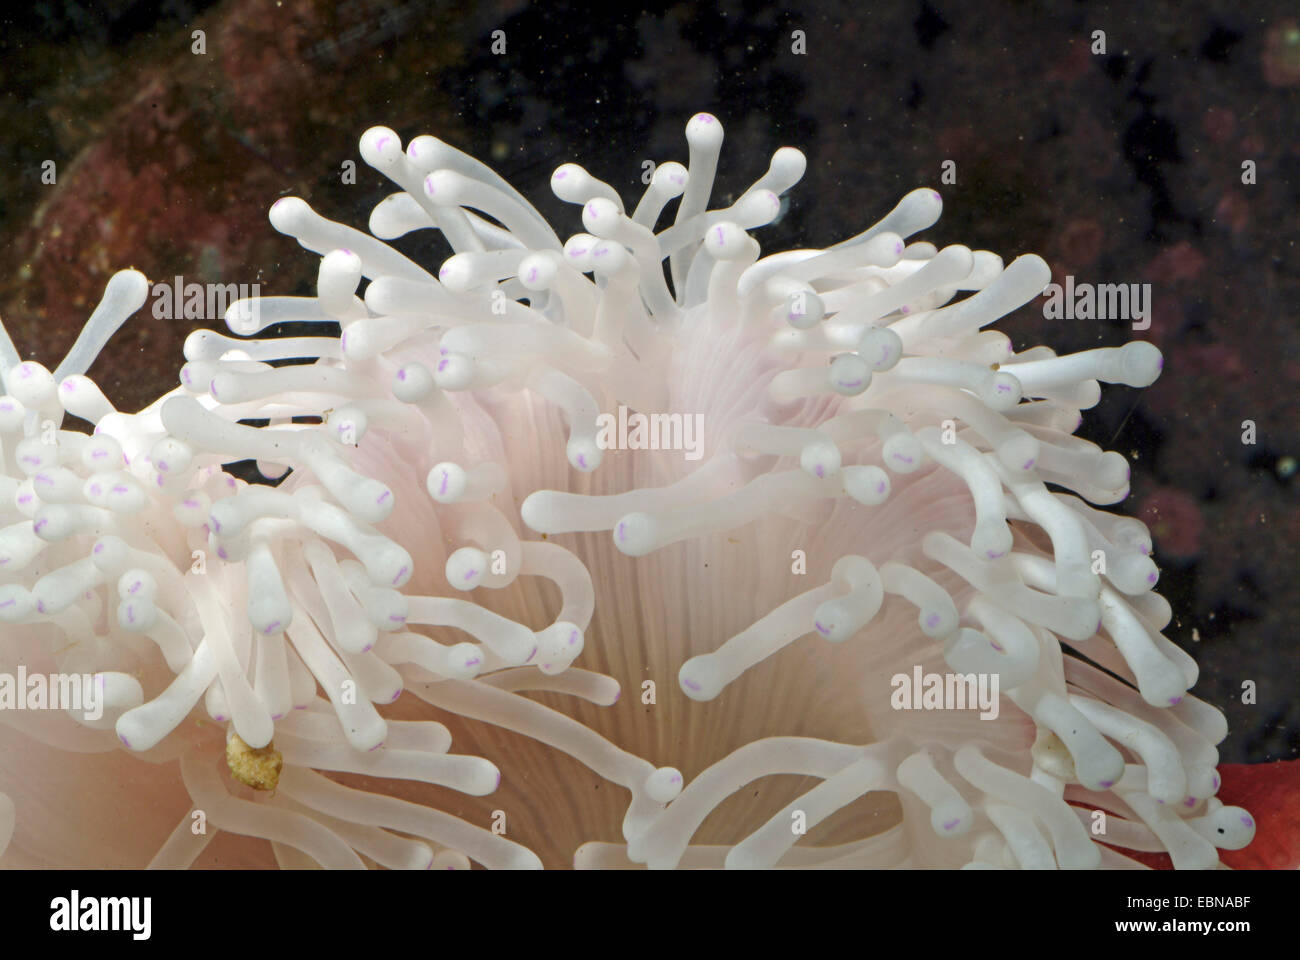 herrliche Anemone, herrliche See-Anemone (Heteractis Magnifica), Tentakeln eine herrliche anemone Stockfoto